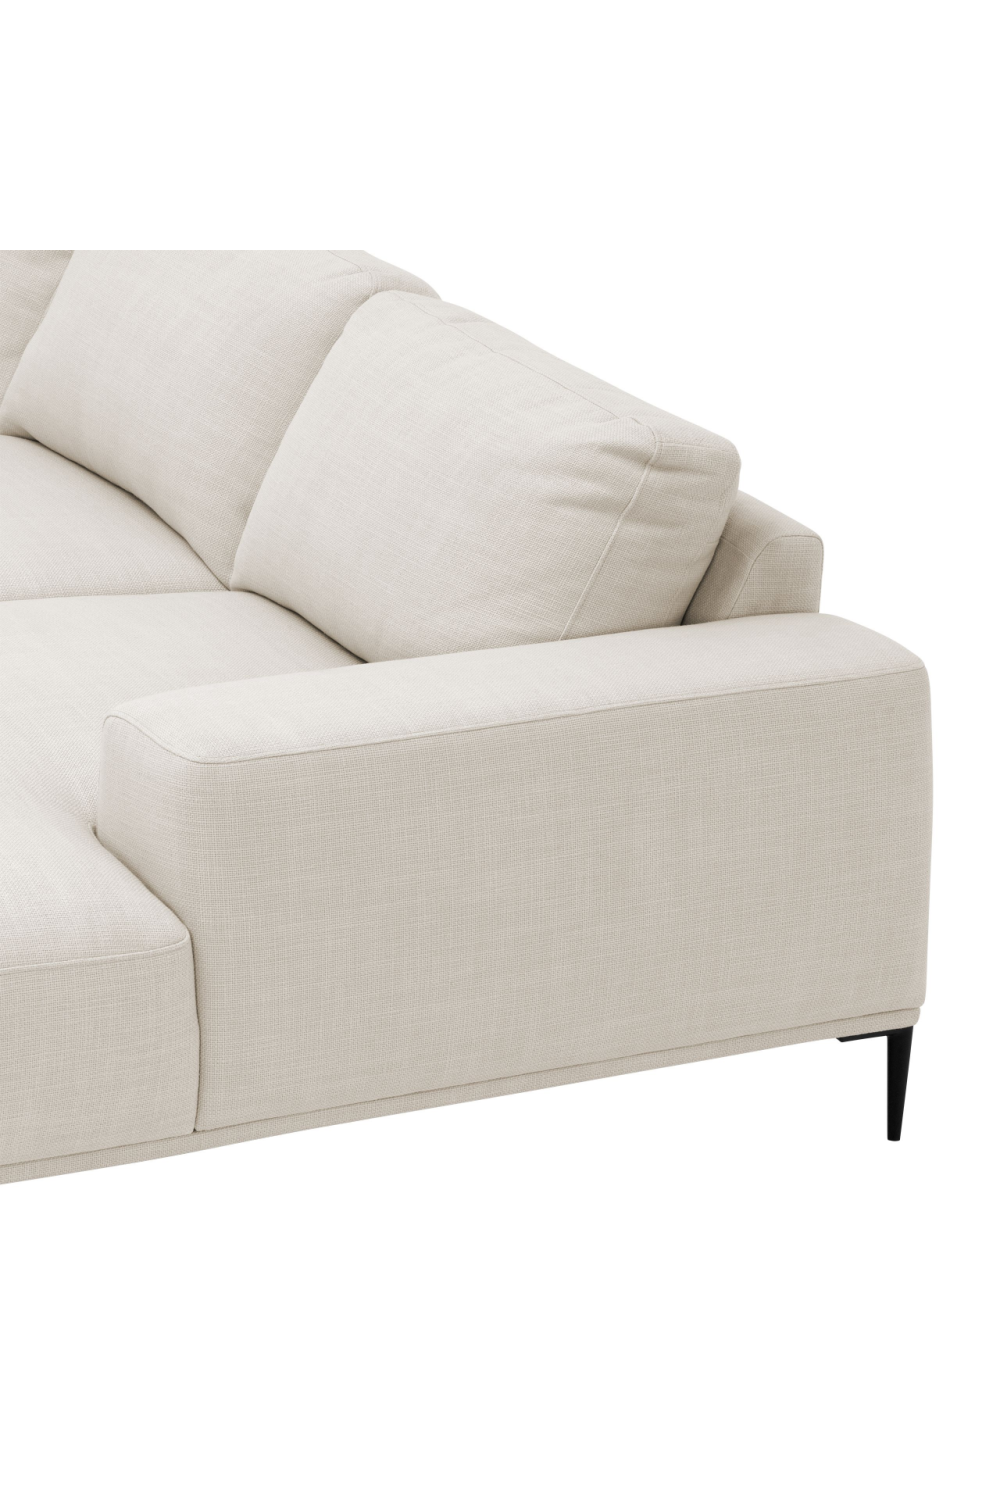 Modern Lounge Sofa | Eichholtz Montado | Oroa.com